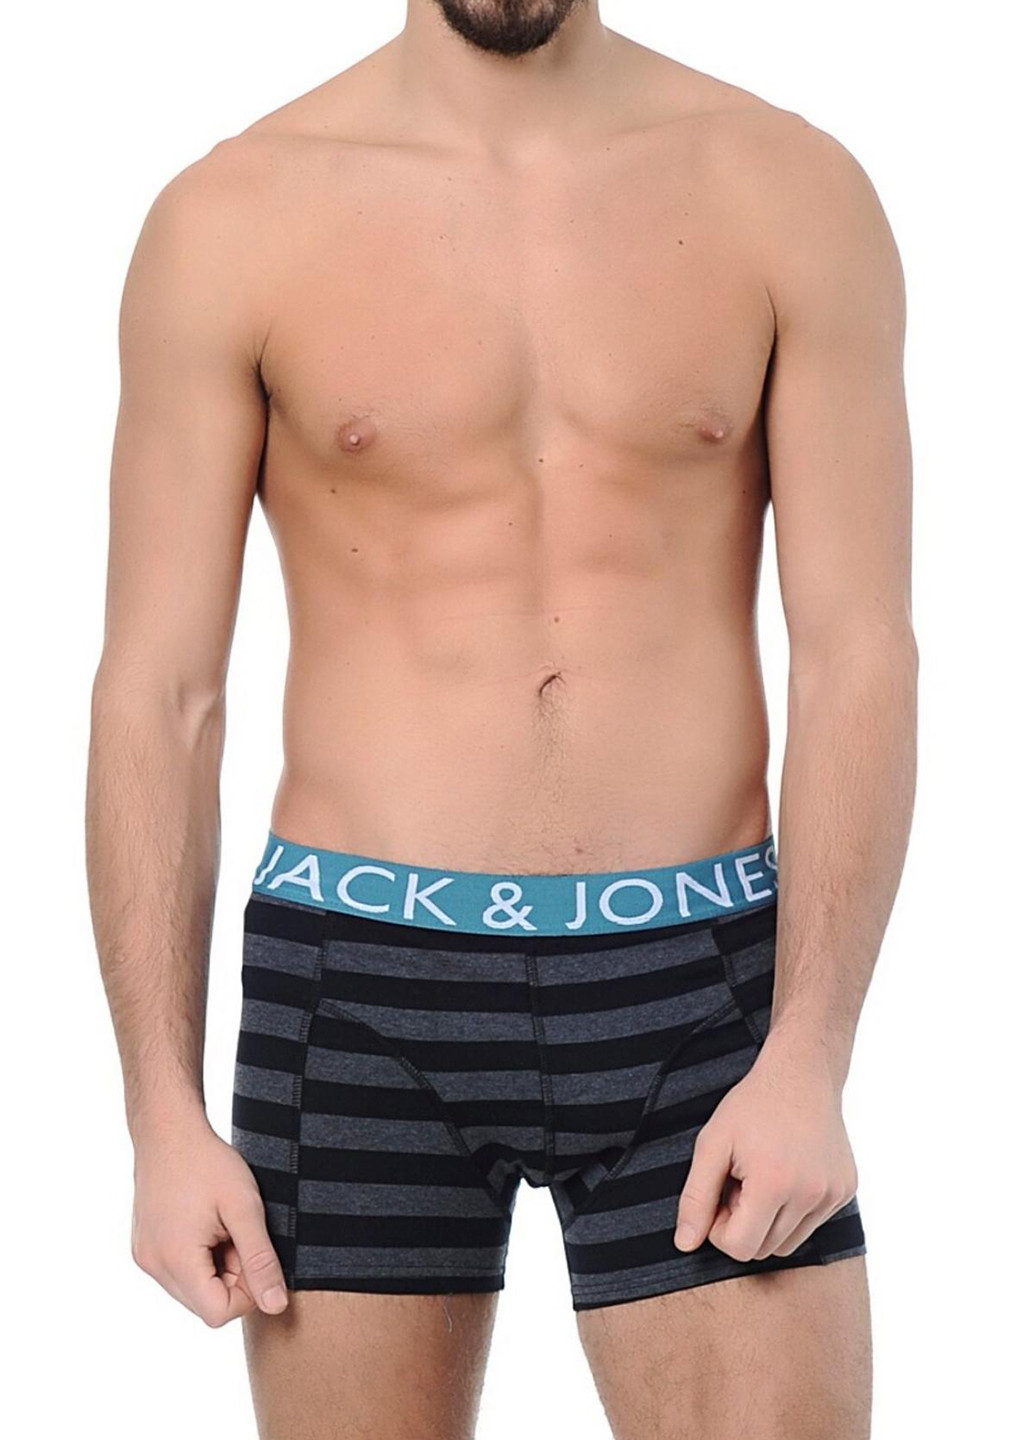 Трусы Jack & Jones боксеры логотипы серые повседневные трикотаж, хлопок